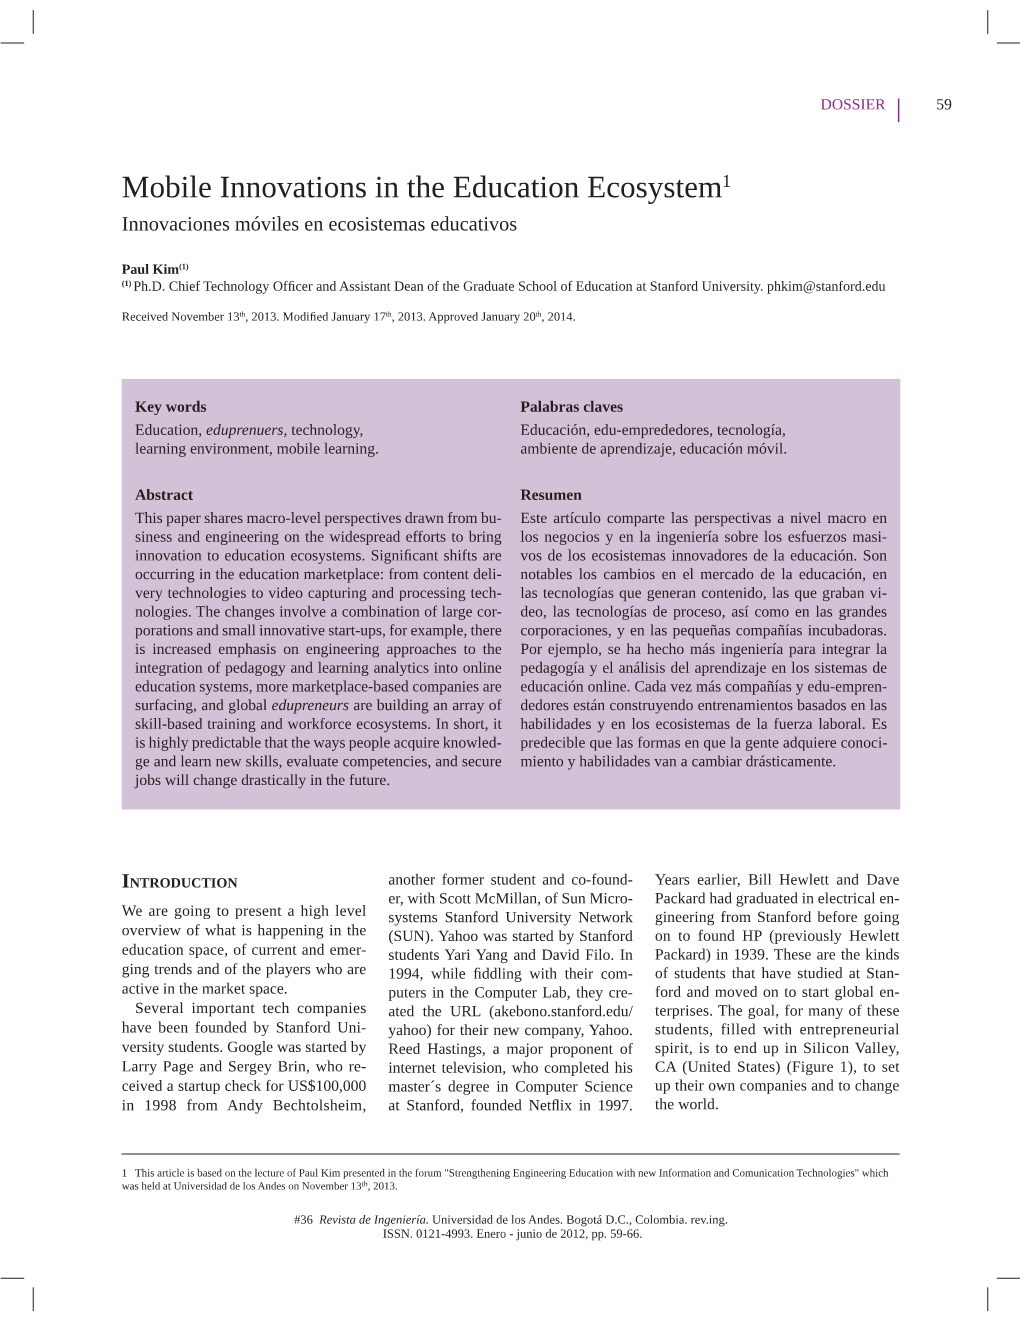 Mobile Innovations in the Education Ecosystem1 Innovaciones Móviles En Ecosistemas Educativos